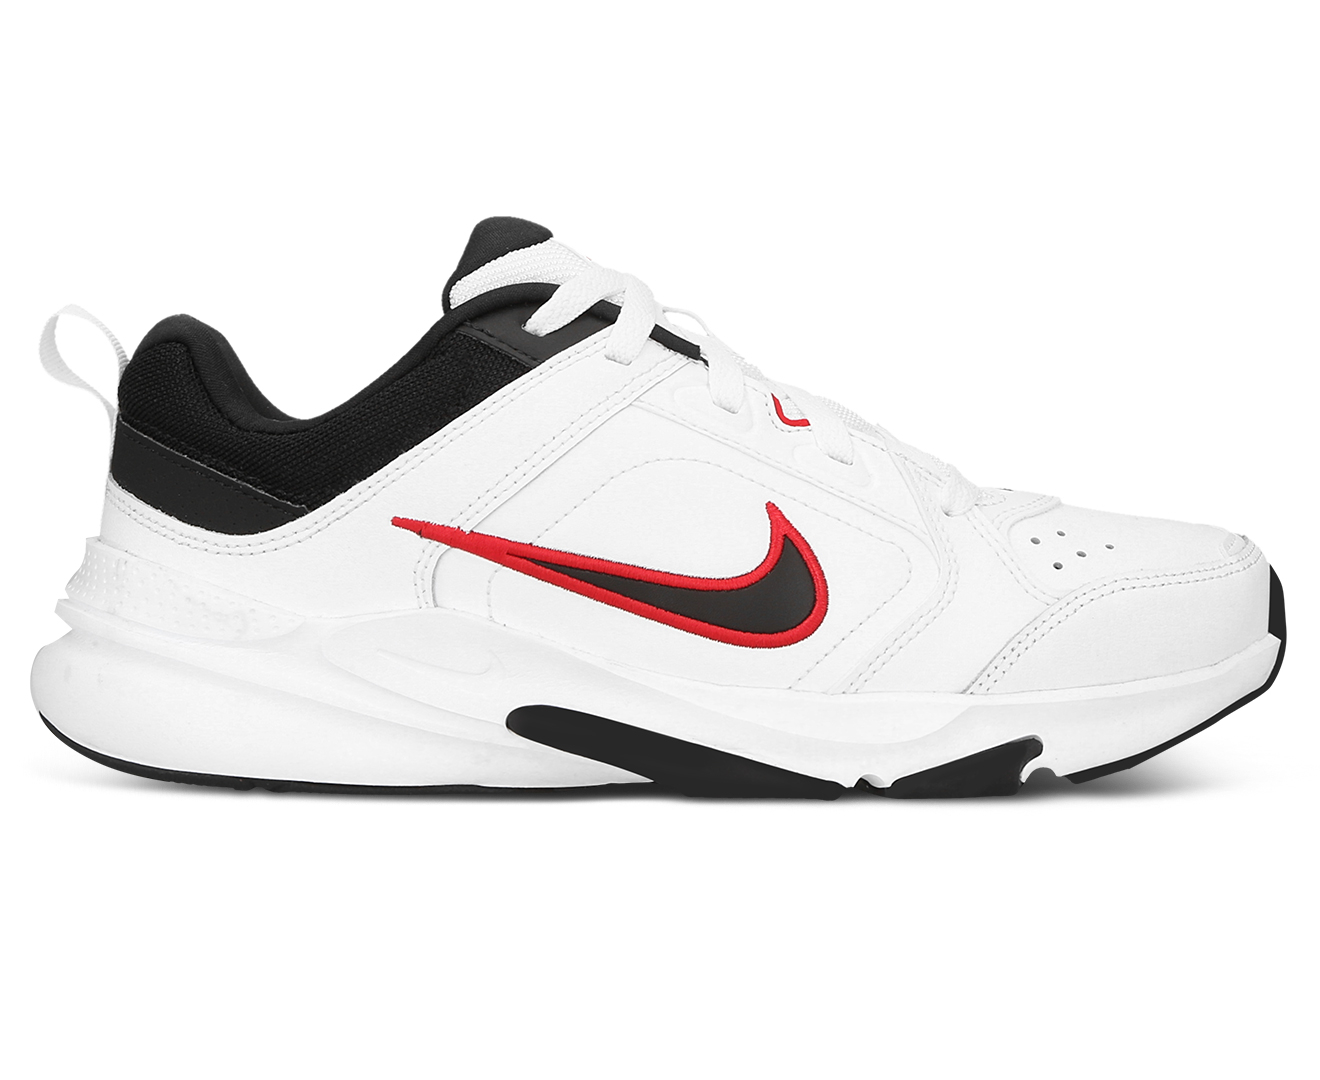 Nike Men's Defy All Day Training Shoes - White/Black/University Red ...